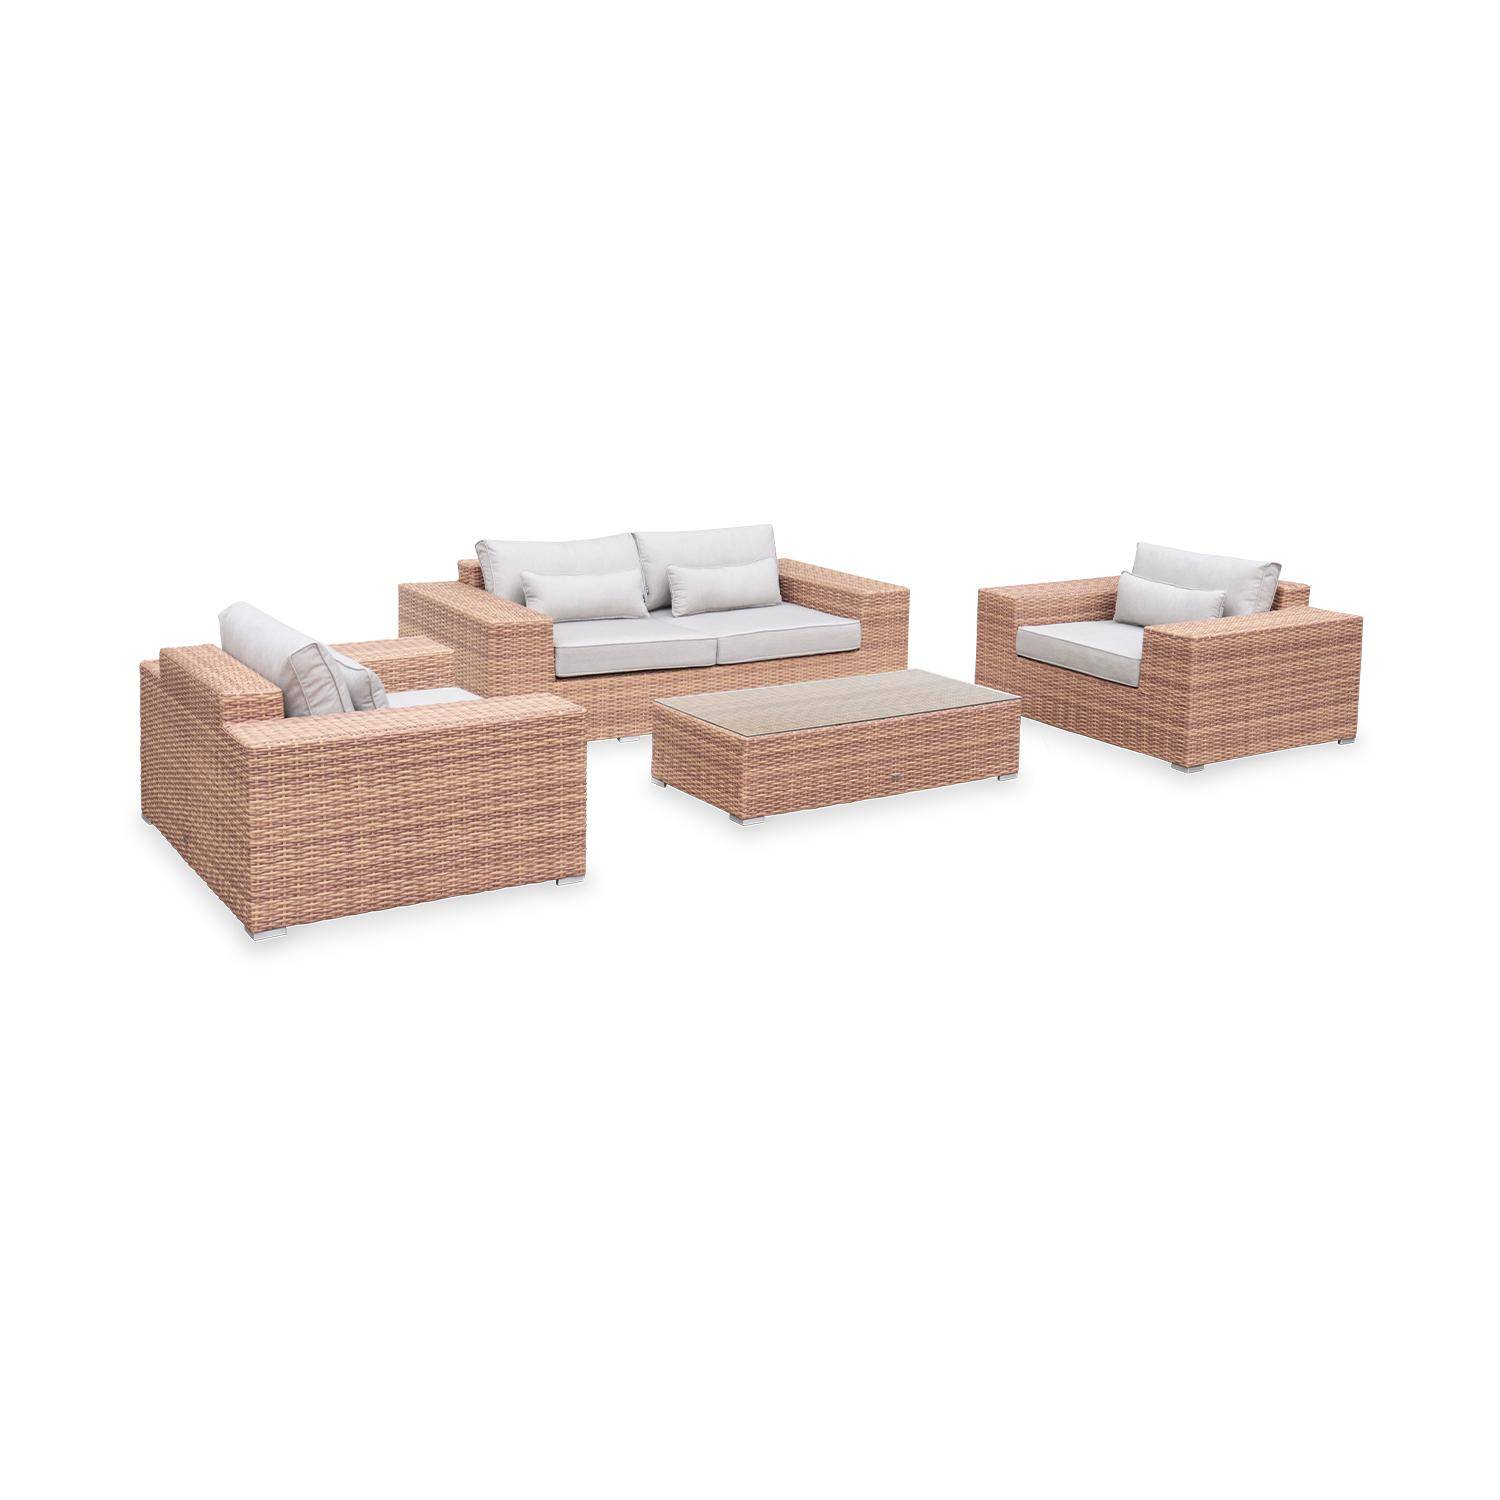 Extra-large 4-seater polyrattan garden sofa set - Sofa, 2 Armchairs, Coffee table - Gubbio - Beige Photo1